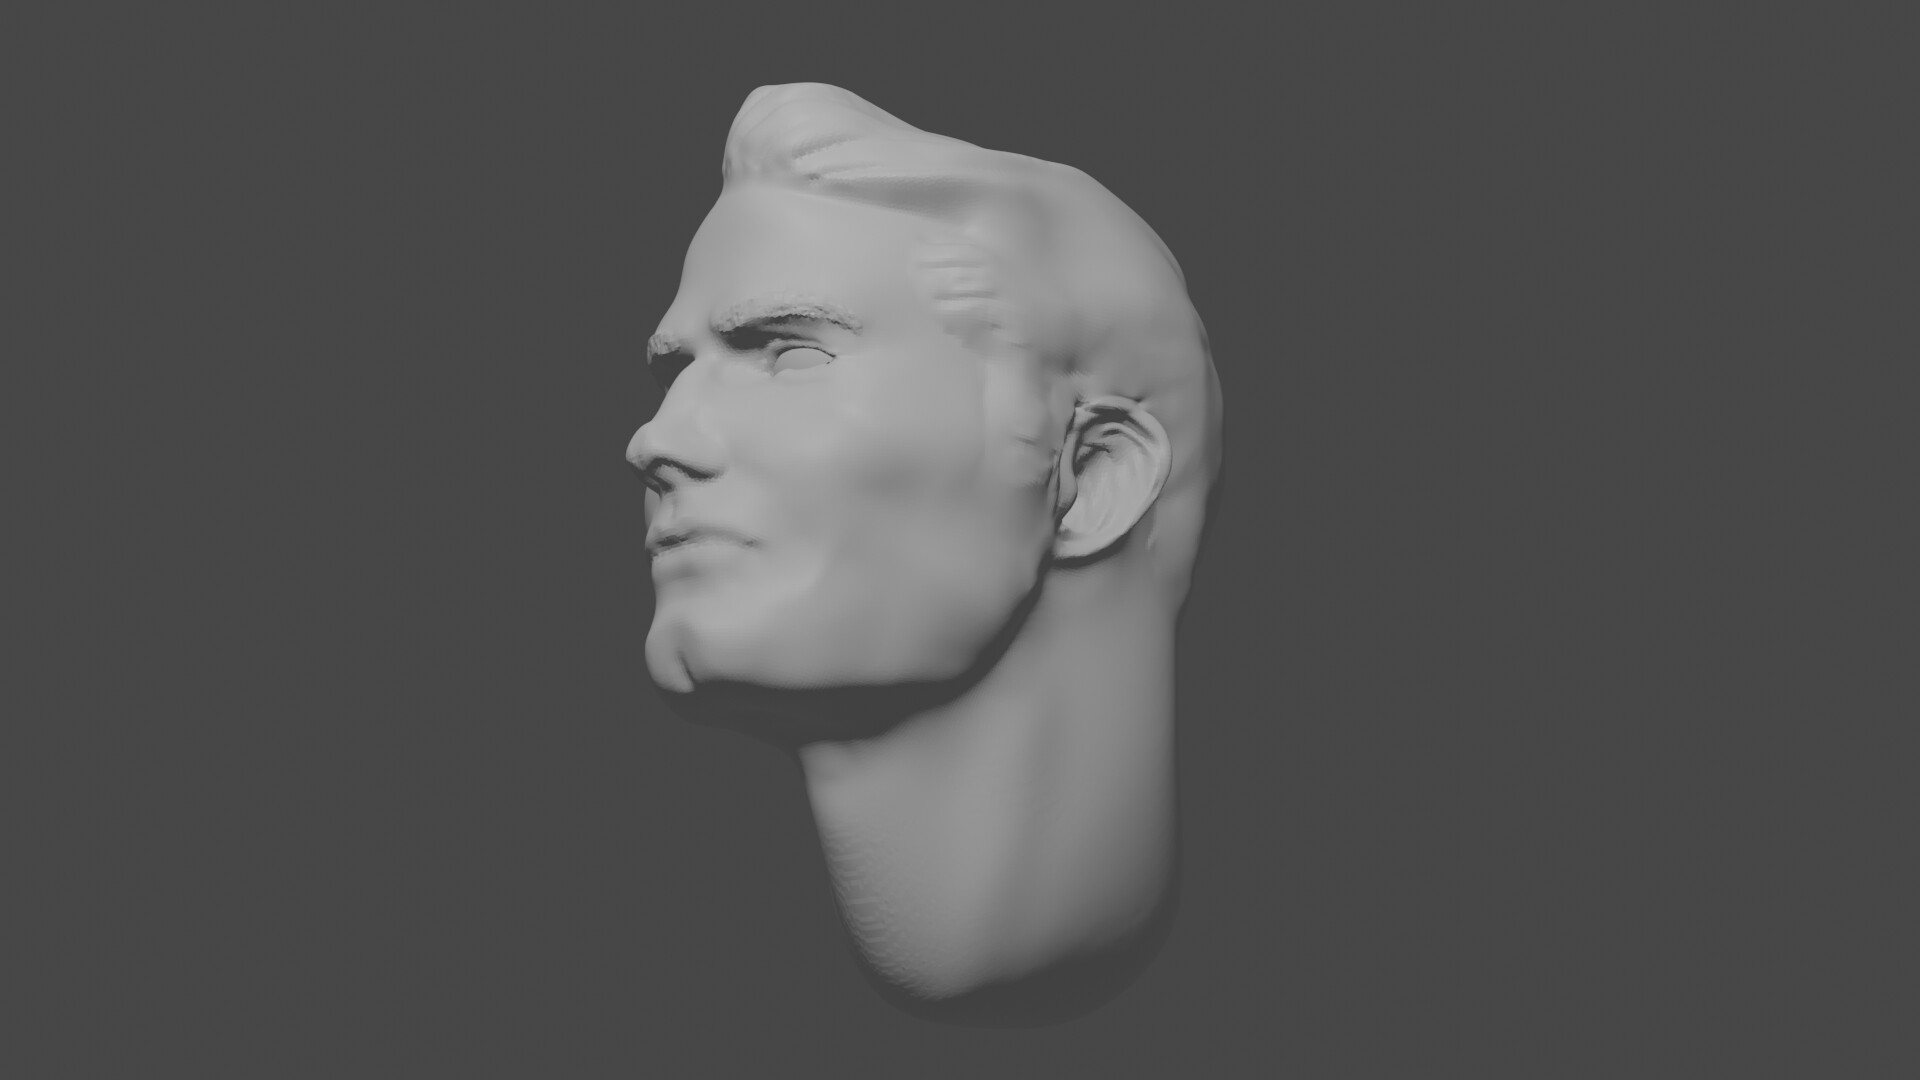 ArtStation - SUPERMAN HEAD 3D SCULPT